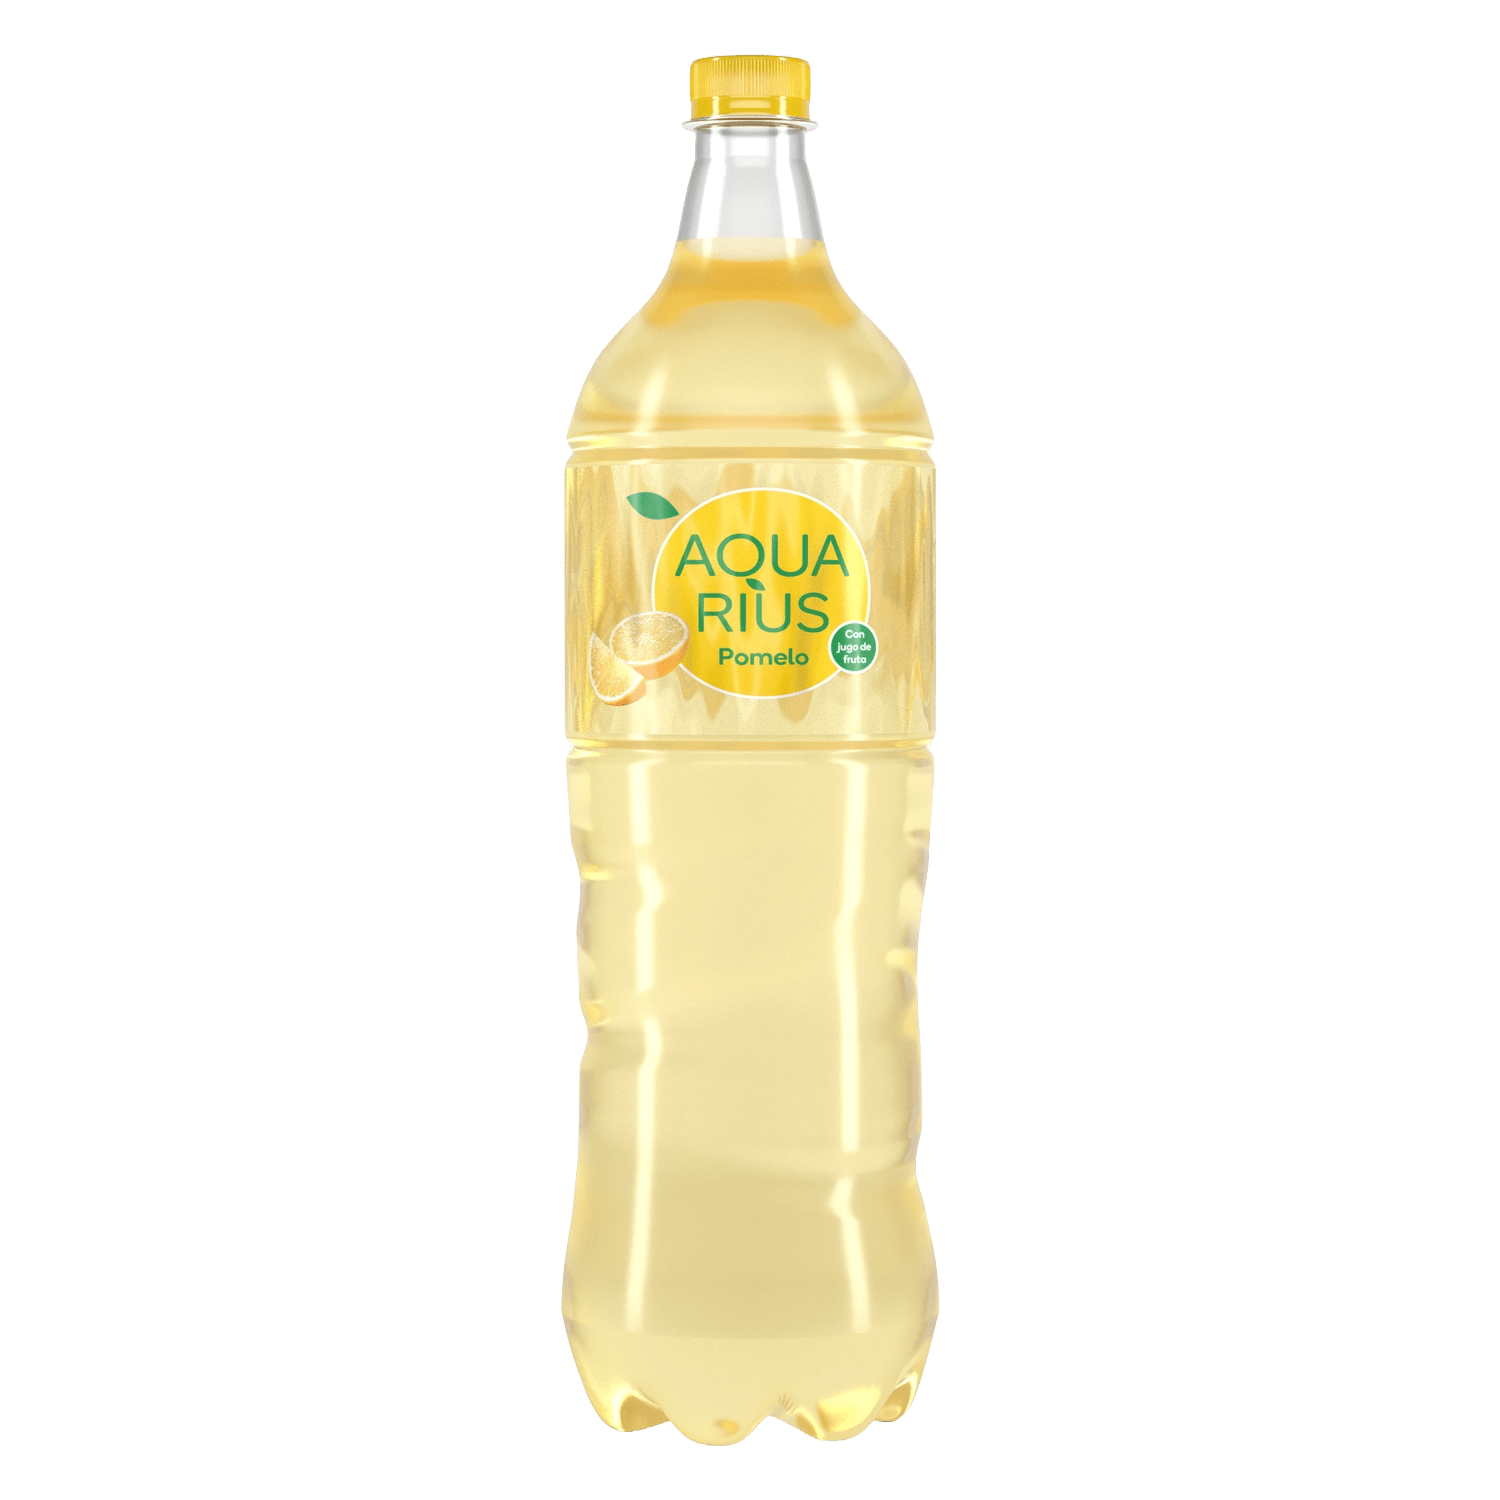 Botella de Aquarius Pomelo 1,5L